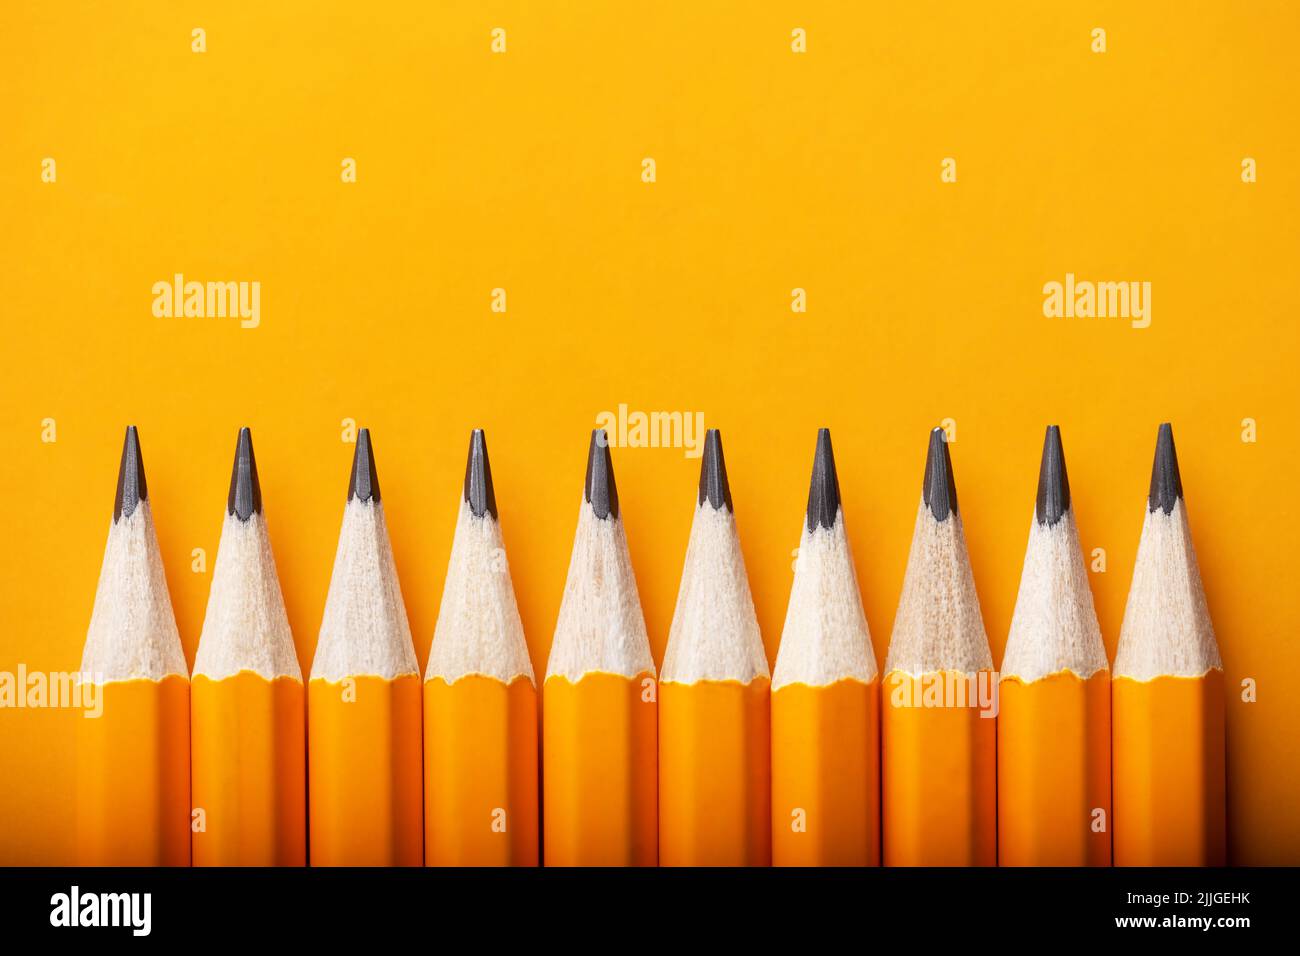 Arrière-plan abstrait de crayons jaunes dans une rangée. Concept de couleur jaune et orange Banque D'Images